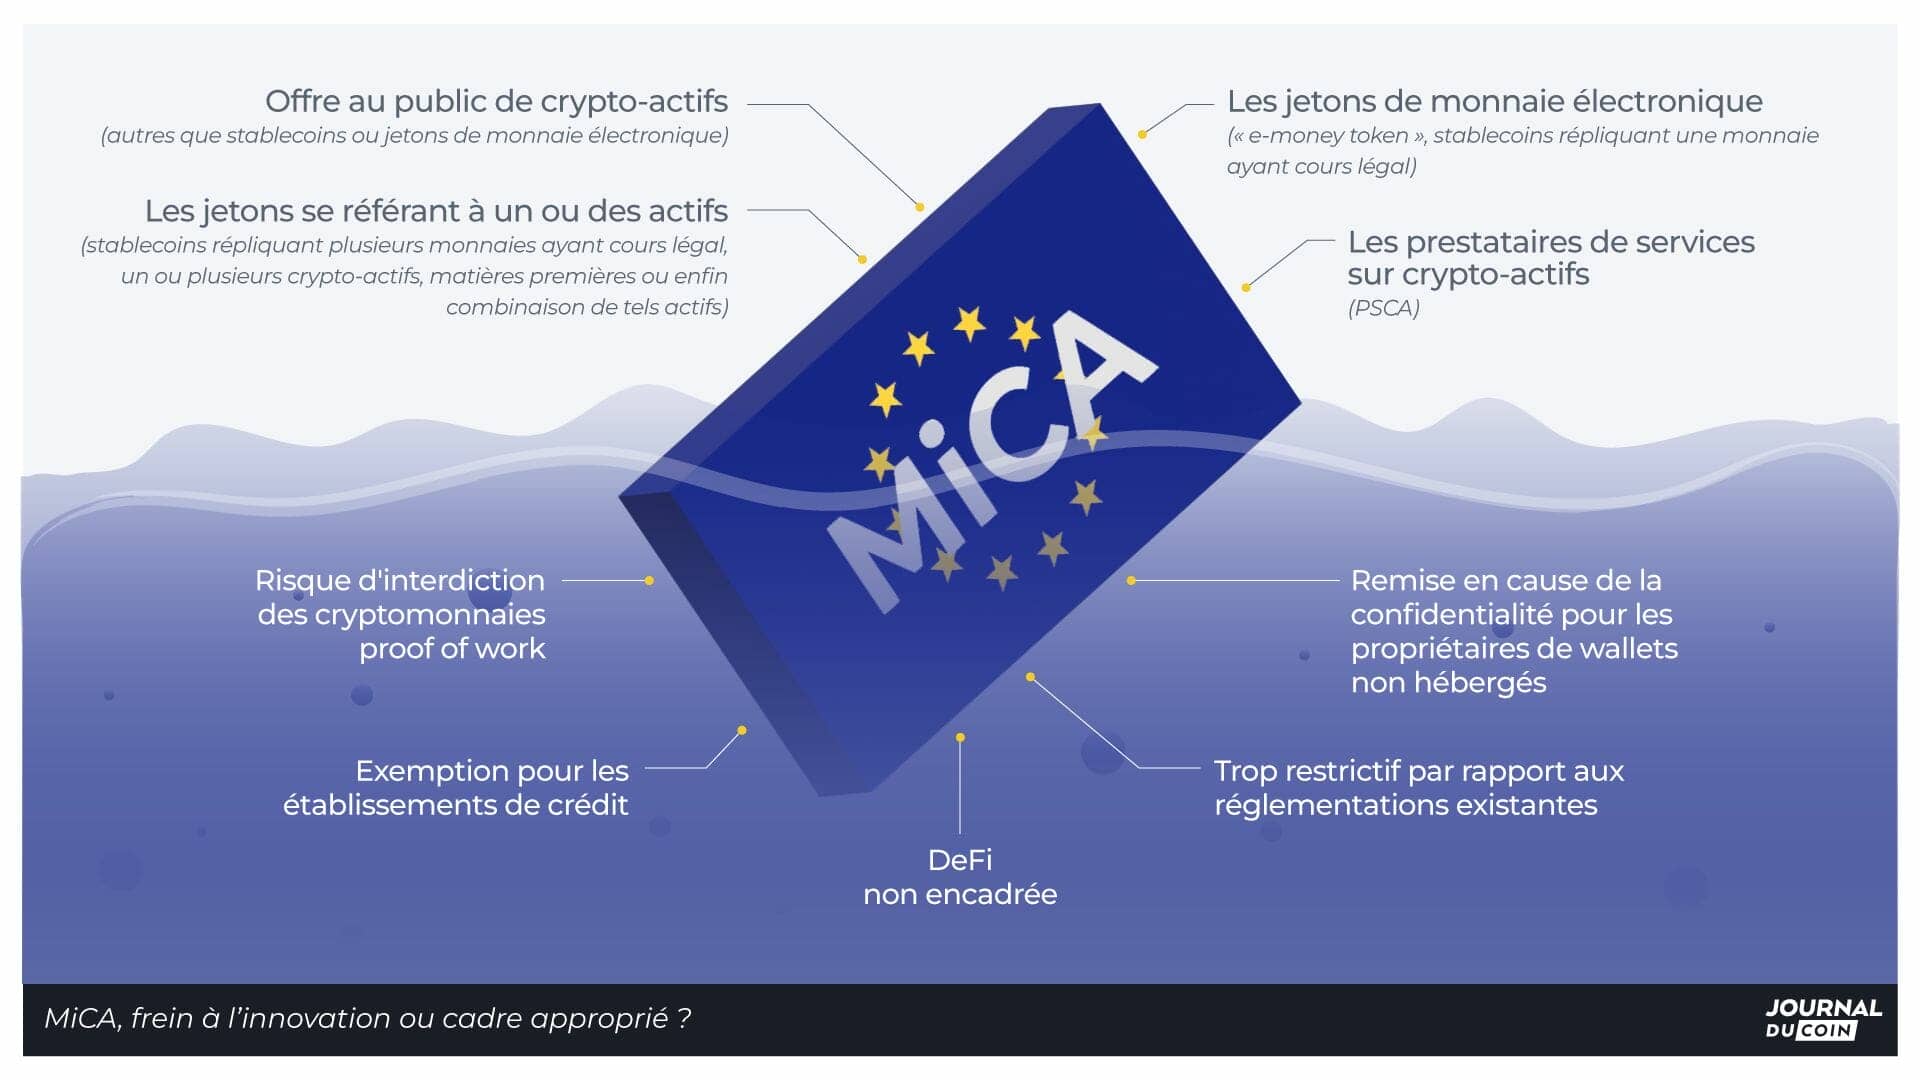 Avec MiCA - Markets in Crypto-Assets - les régulateurs européens veulent poser un cadre sur l’écosystème crypto